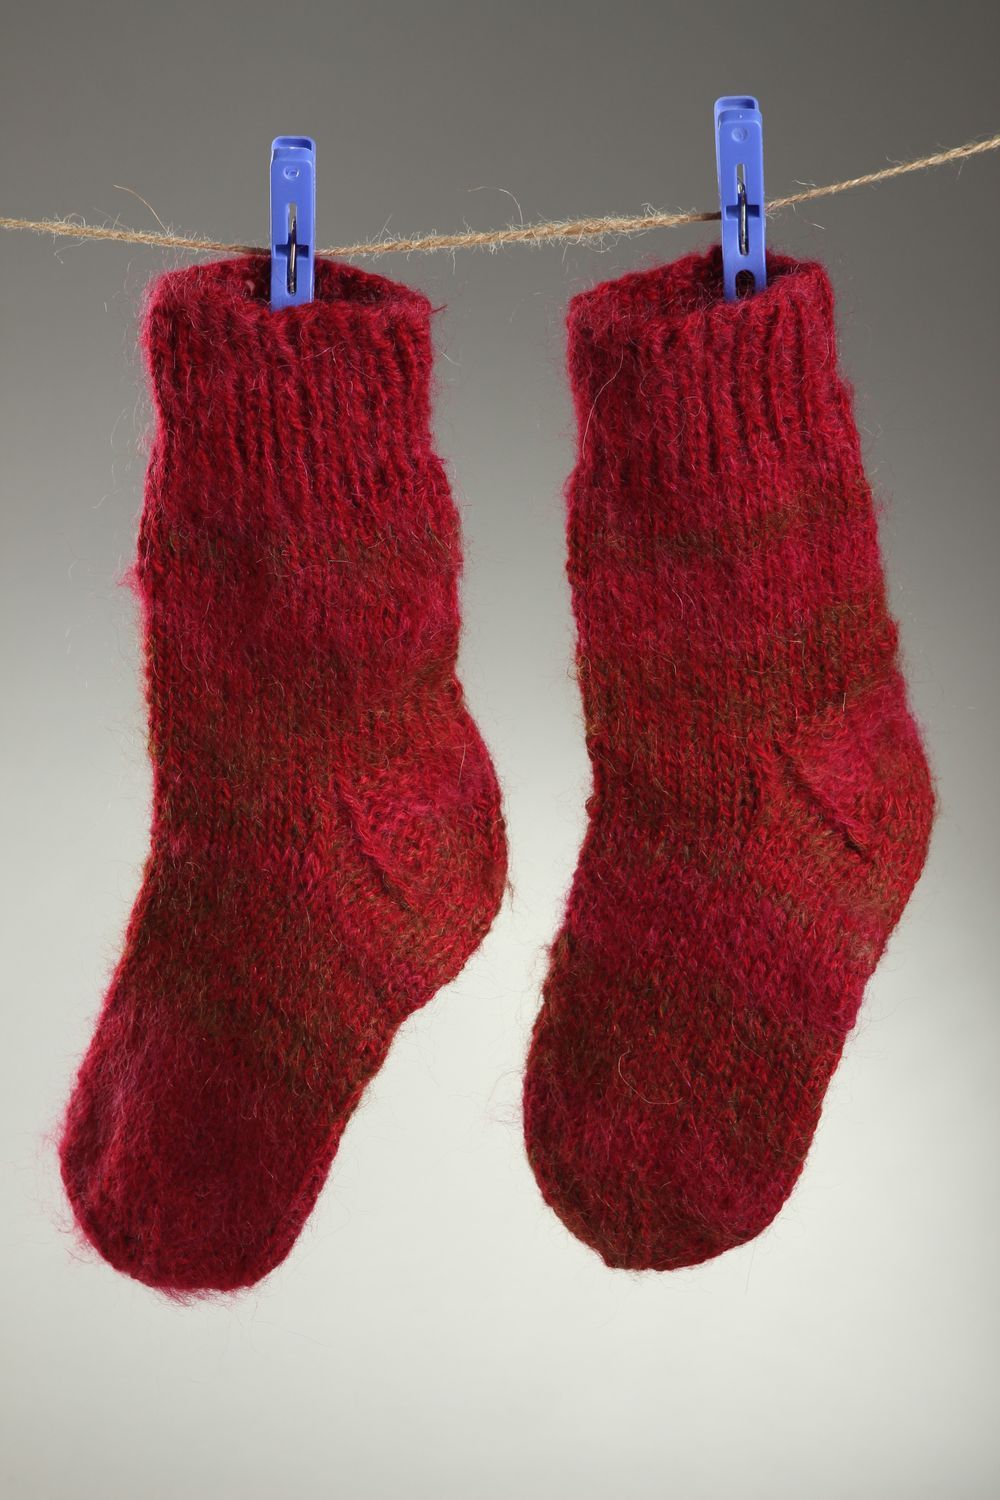 Homemade knitted woolen socks warm winter socks best wool socks gifts for women photo 1